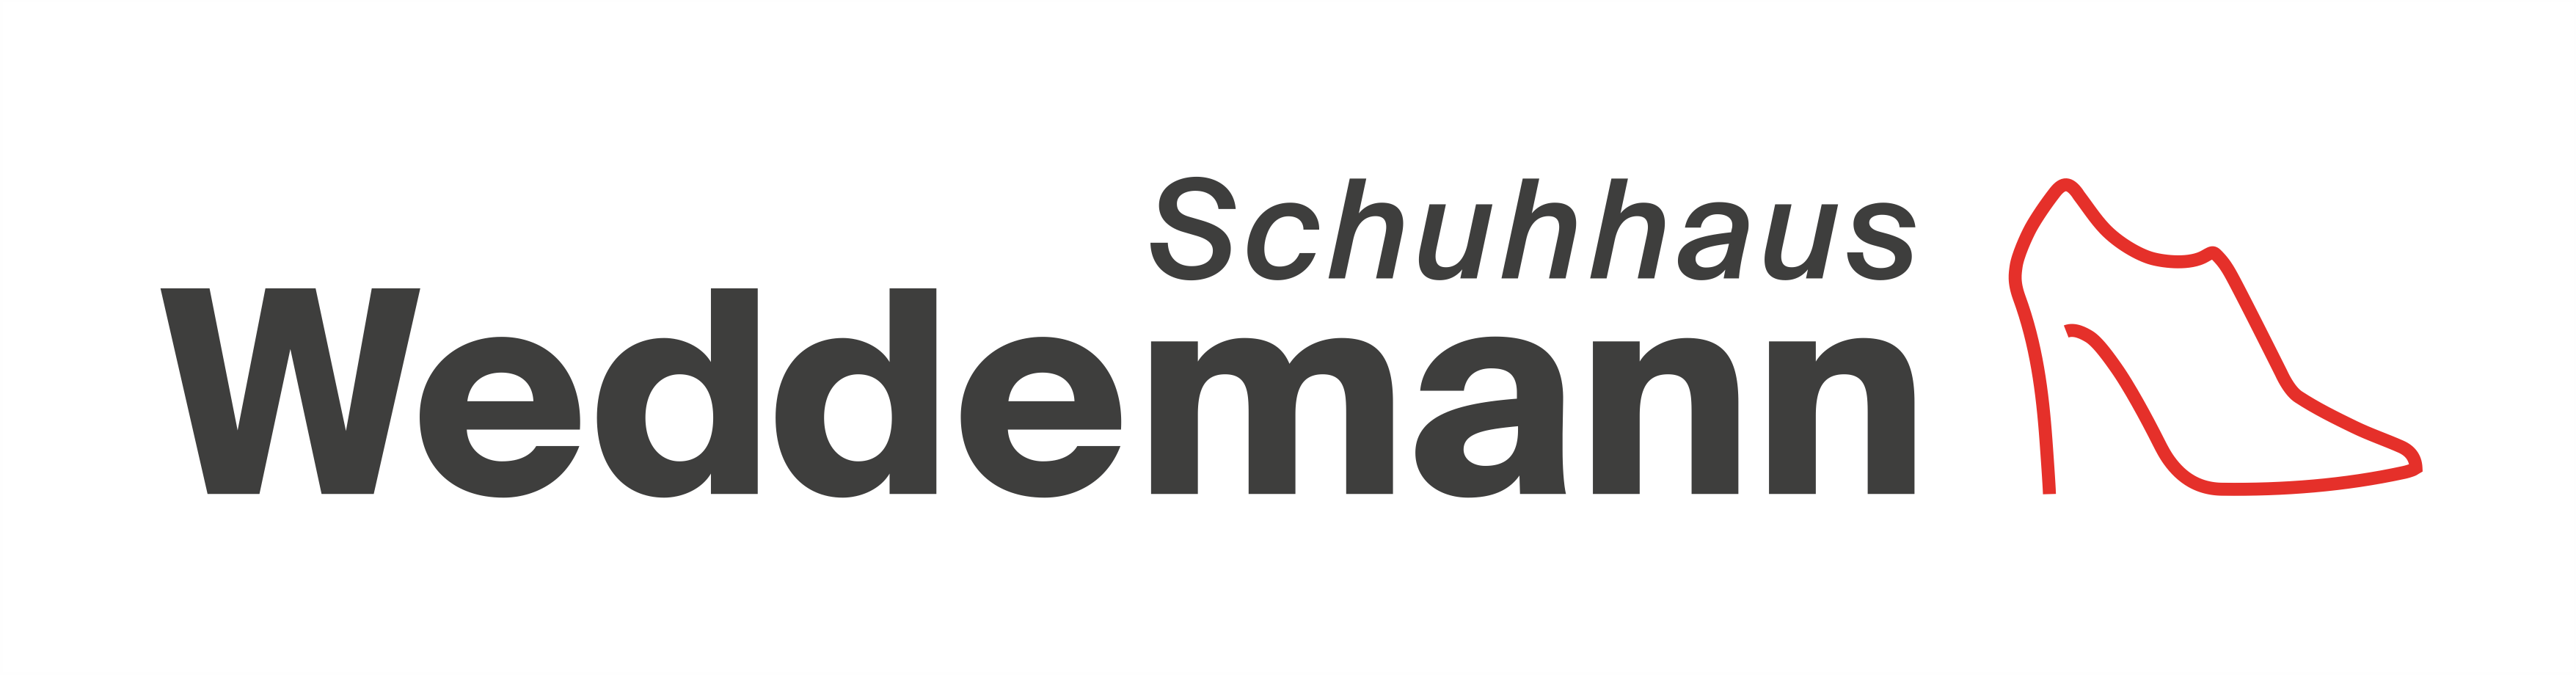 Schuhhaus Weddemann